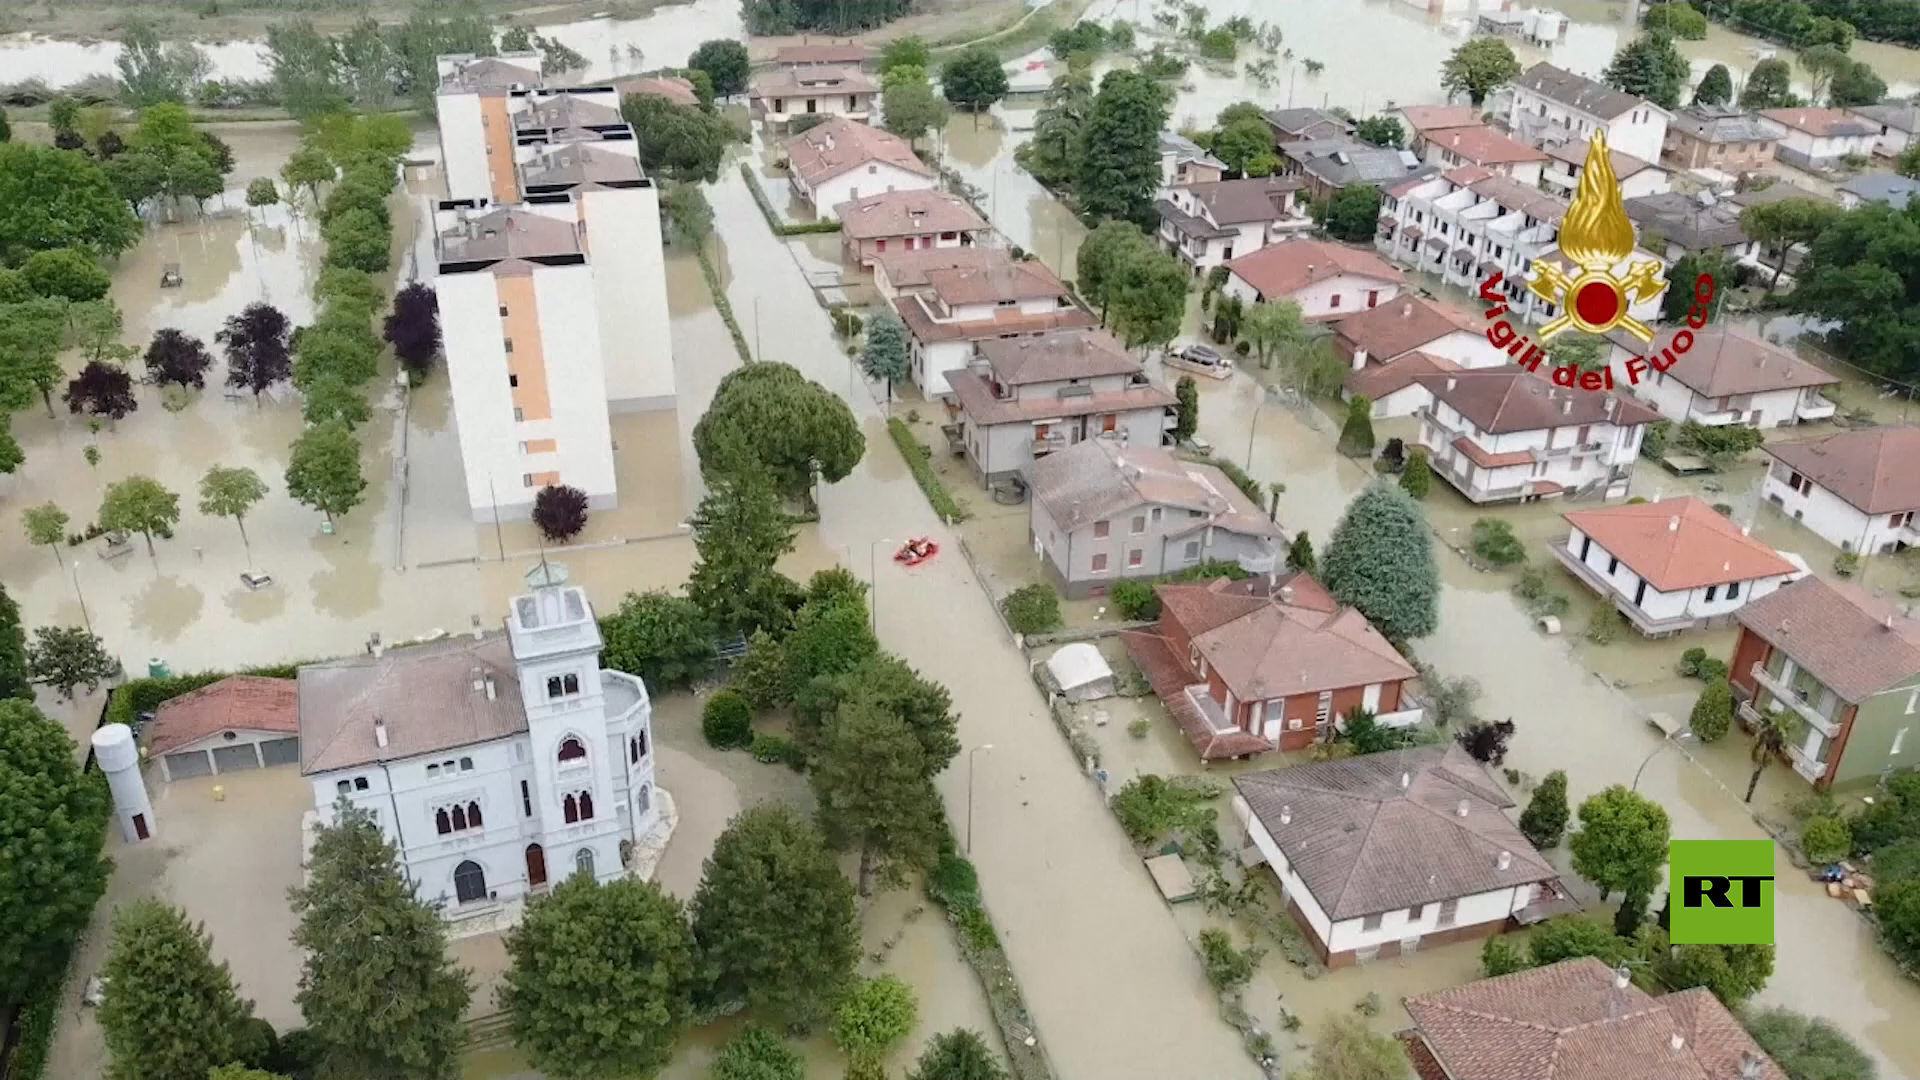 تصوير جوي يظهر حجم الفيضانات في شمال شرق إيطاليا